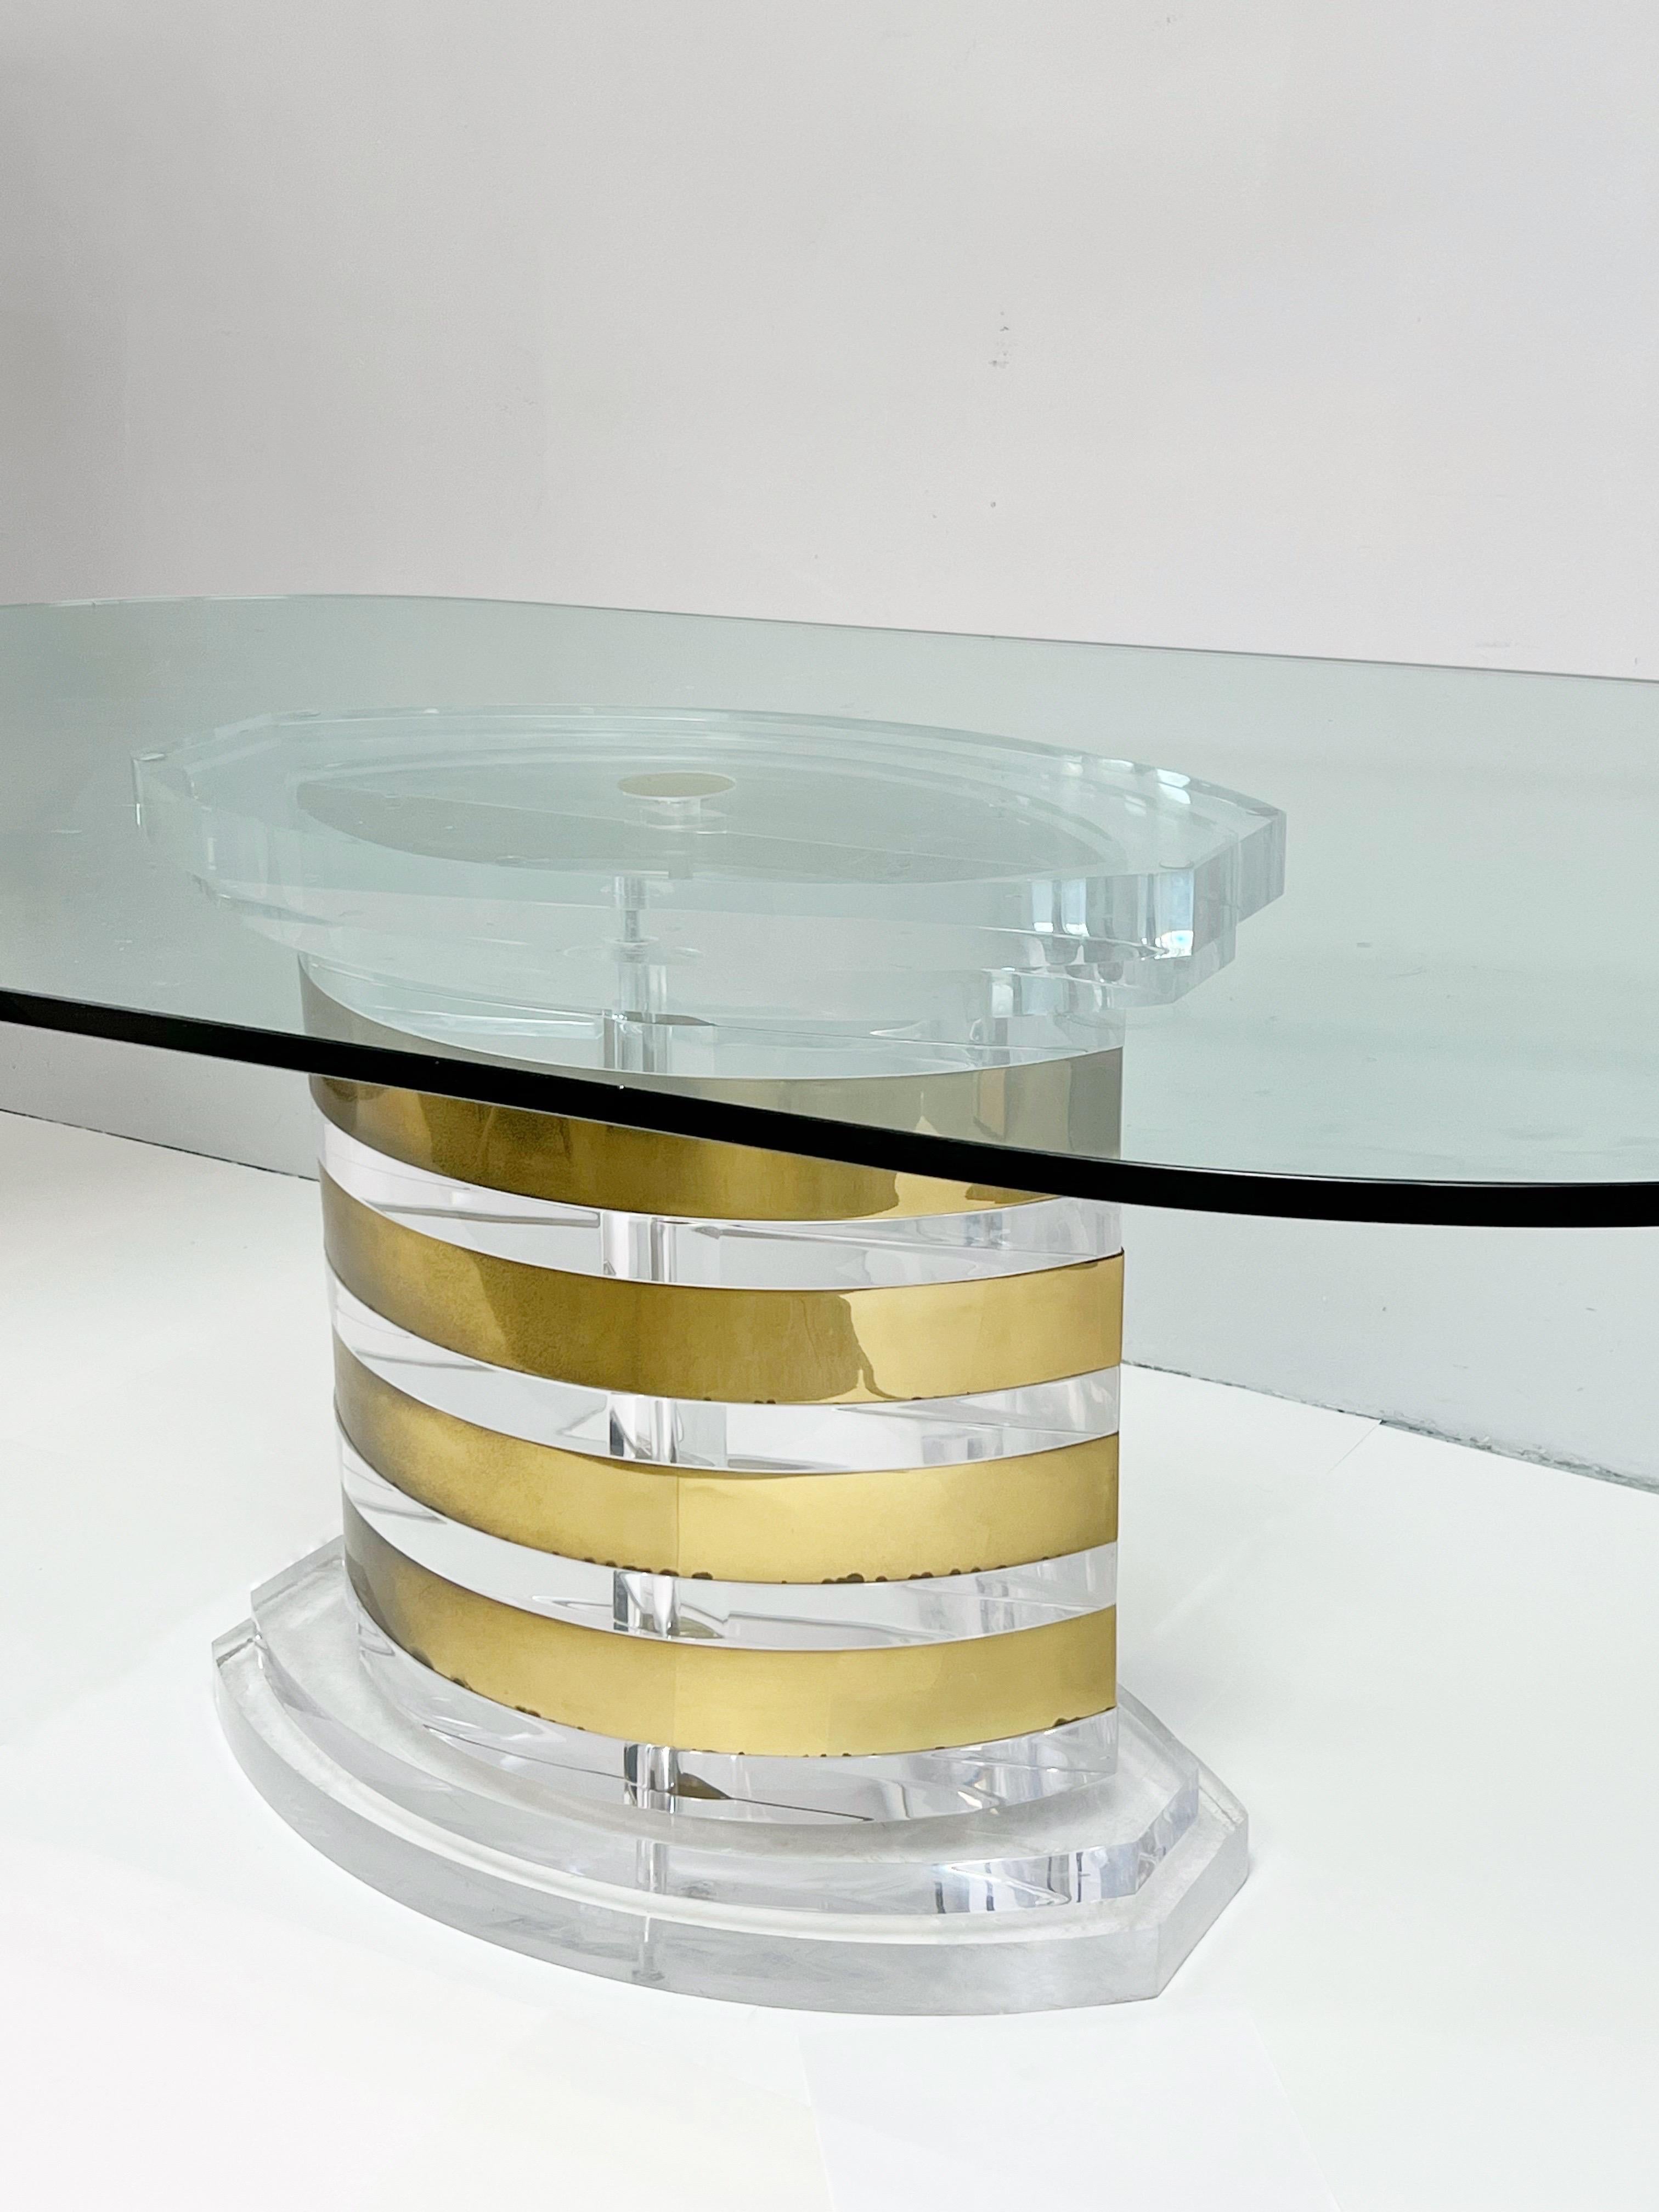 Table spectaculaire de Lion in Frost. Le grand piédestal est en lucite solide avec des bandes en laiton. Dessus en verre de 3/4